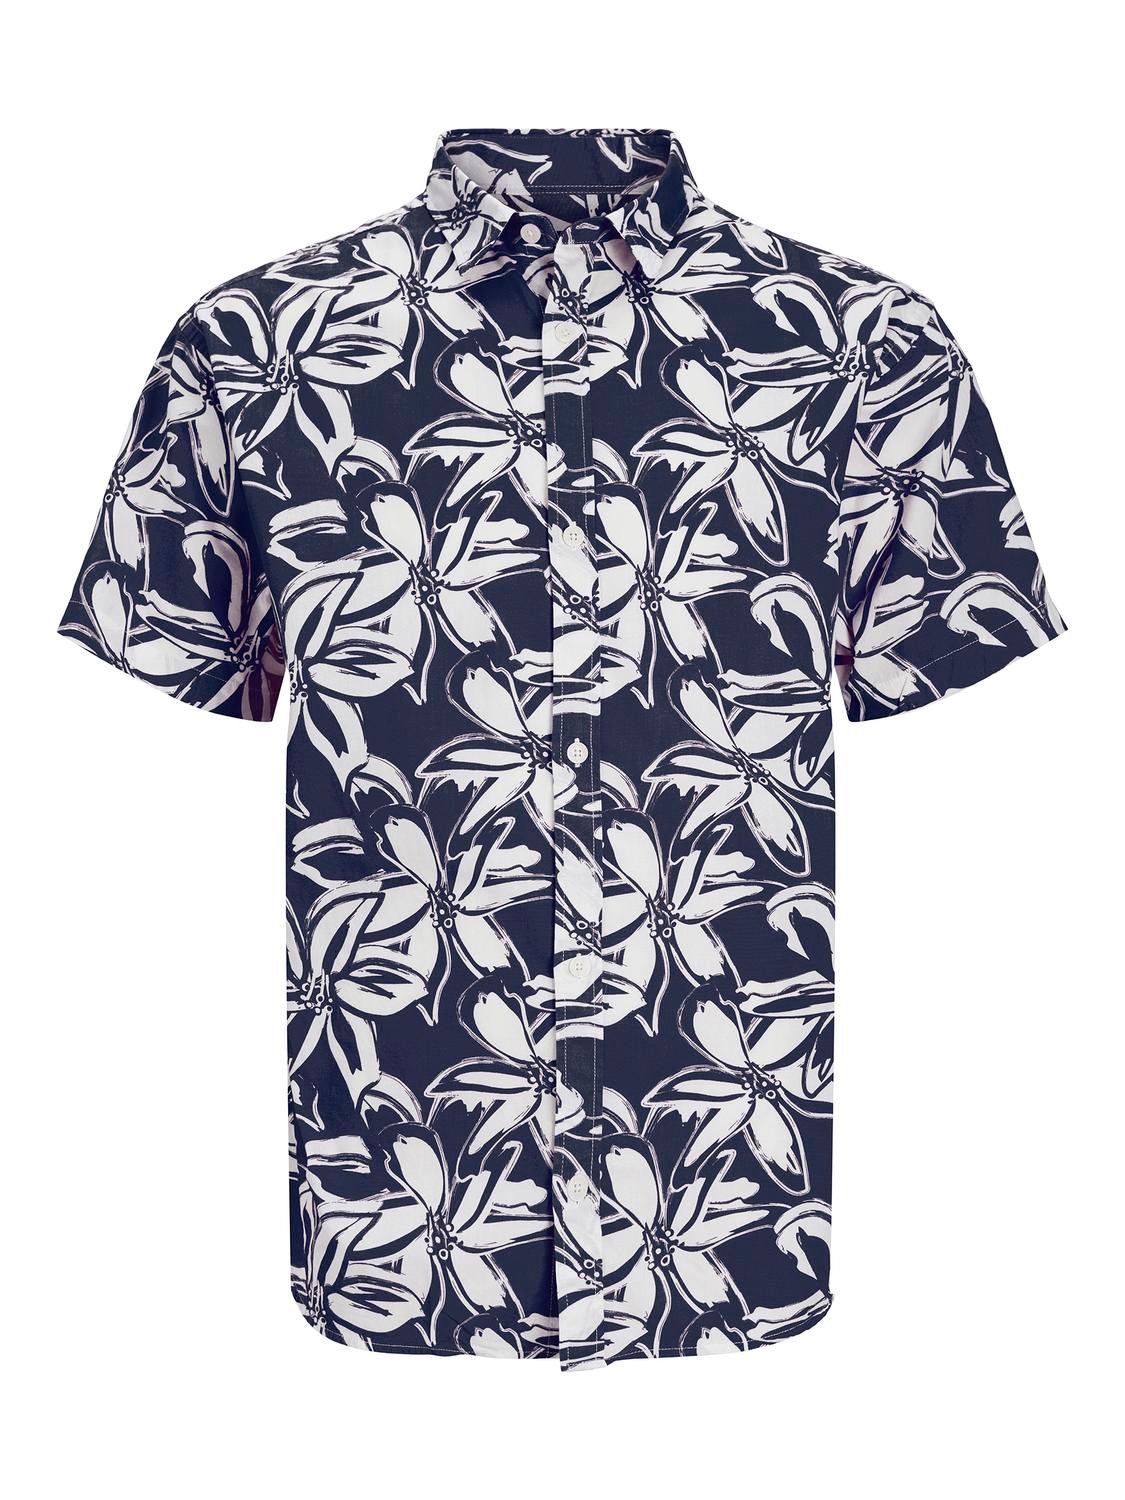 Jack & Jones Marškiniai For boys -Navy Blazer - 12253731